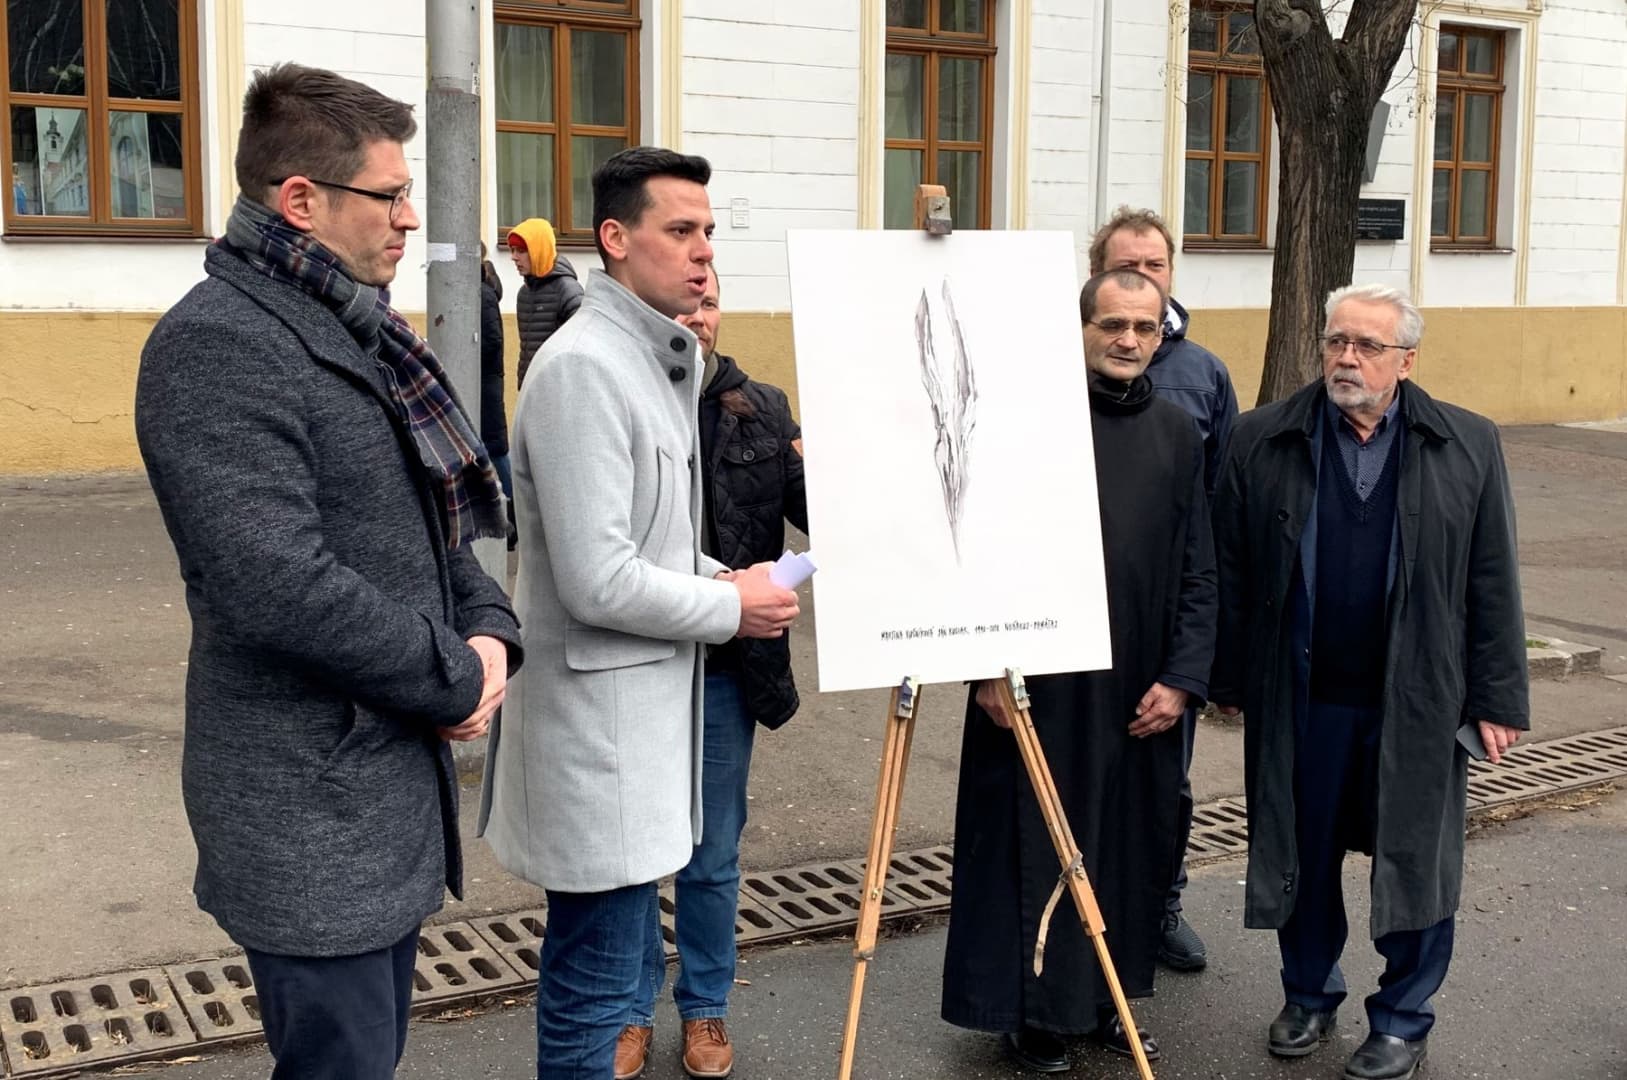 Valódi emlékművet kap Ján Kuciak és Martina Kušnírová Pozsonyban, az idei évfordulón avathatják